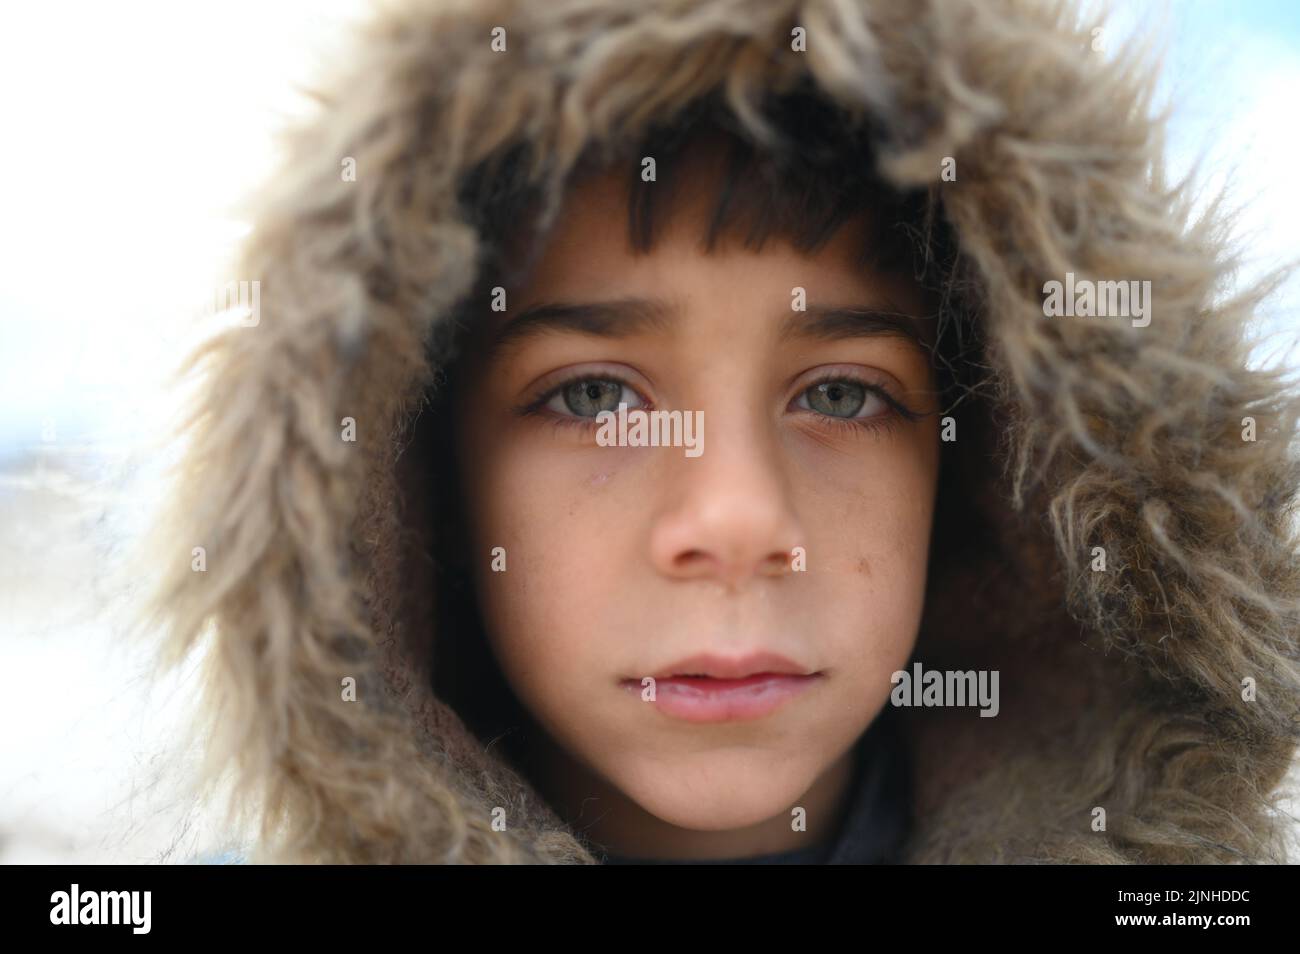 Portrait d'un petit réfugié aux yeux bleus dans le camp d'Ersal, au Liban Banque D'Images